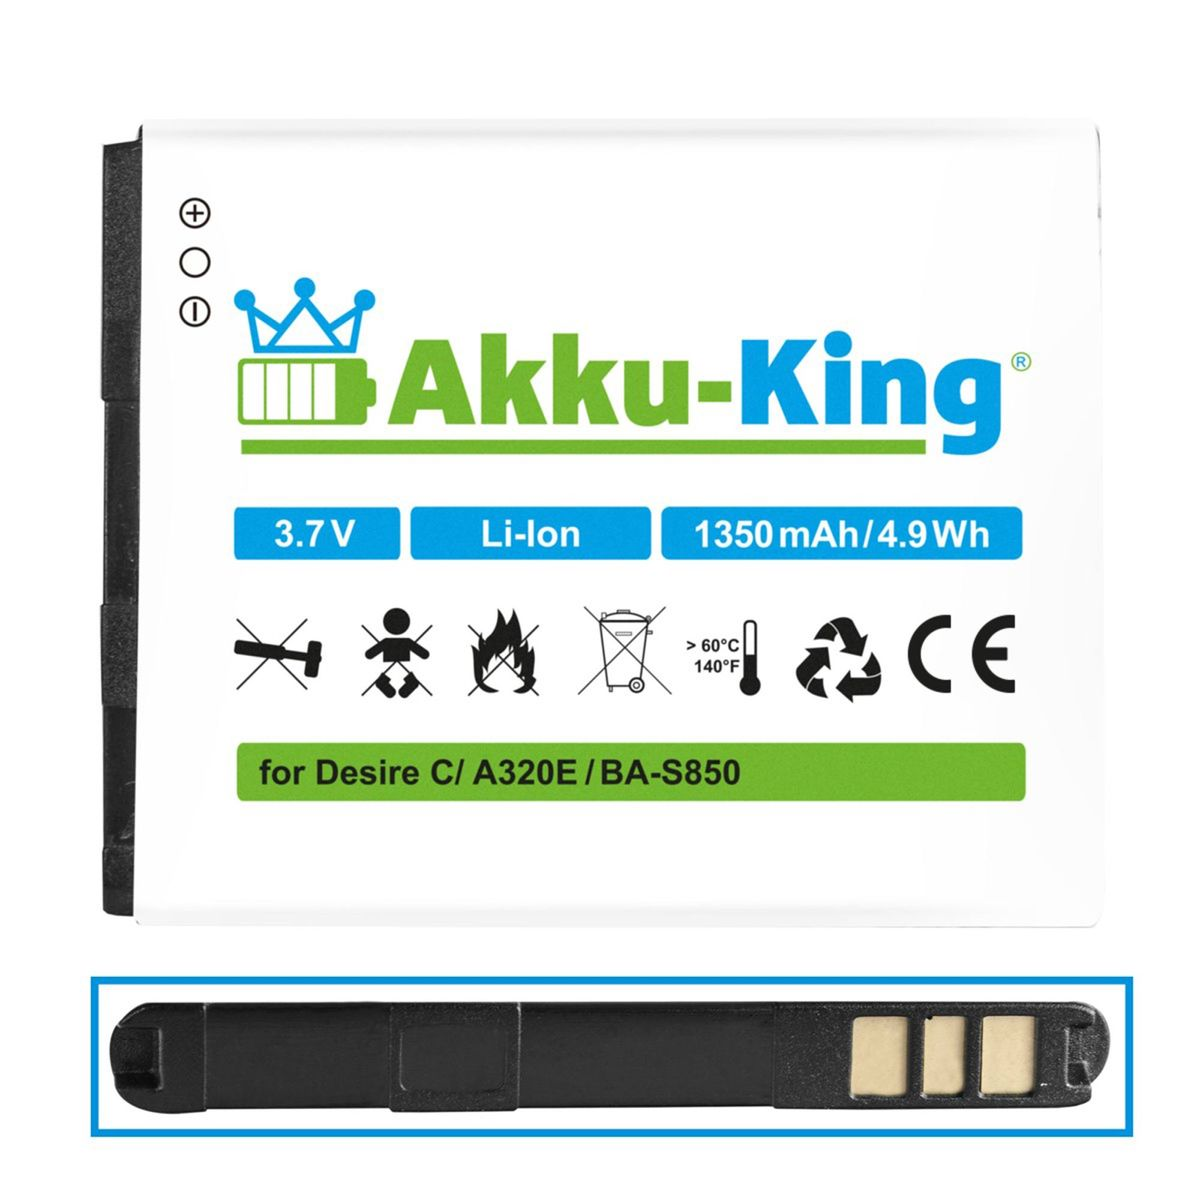 mit Volt, Handy-Akku, Akku 1350mAh 3.7 AKKU-KING HTC BA-S850 kompatibel Li-Ion